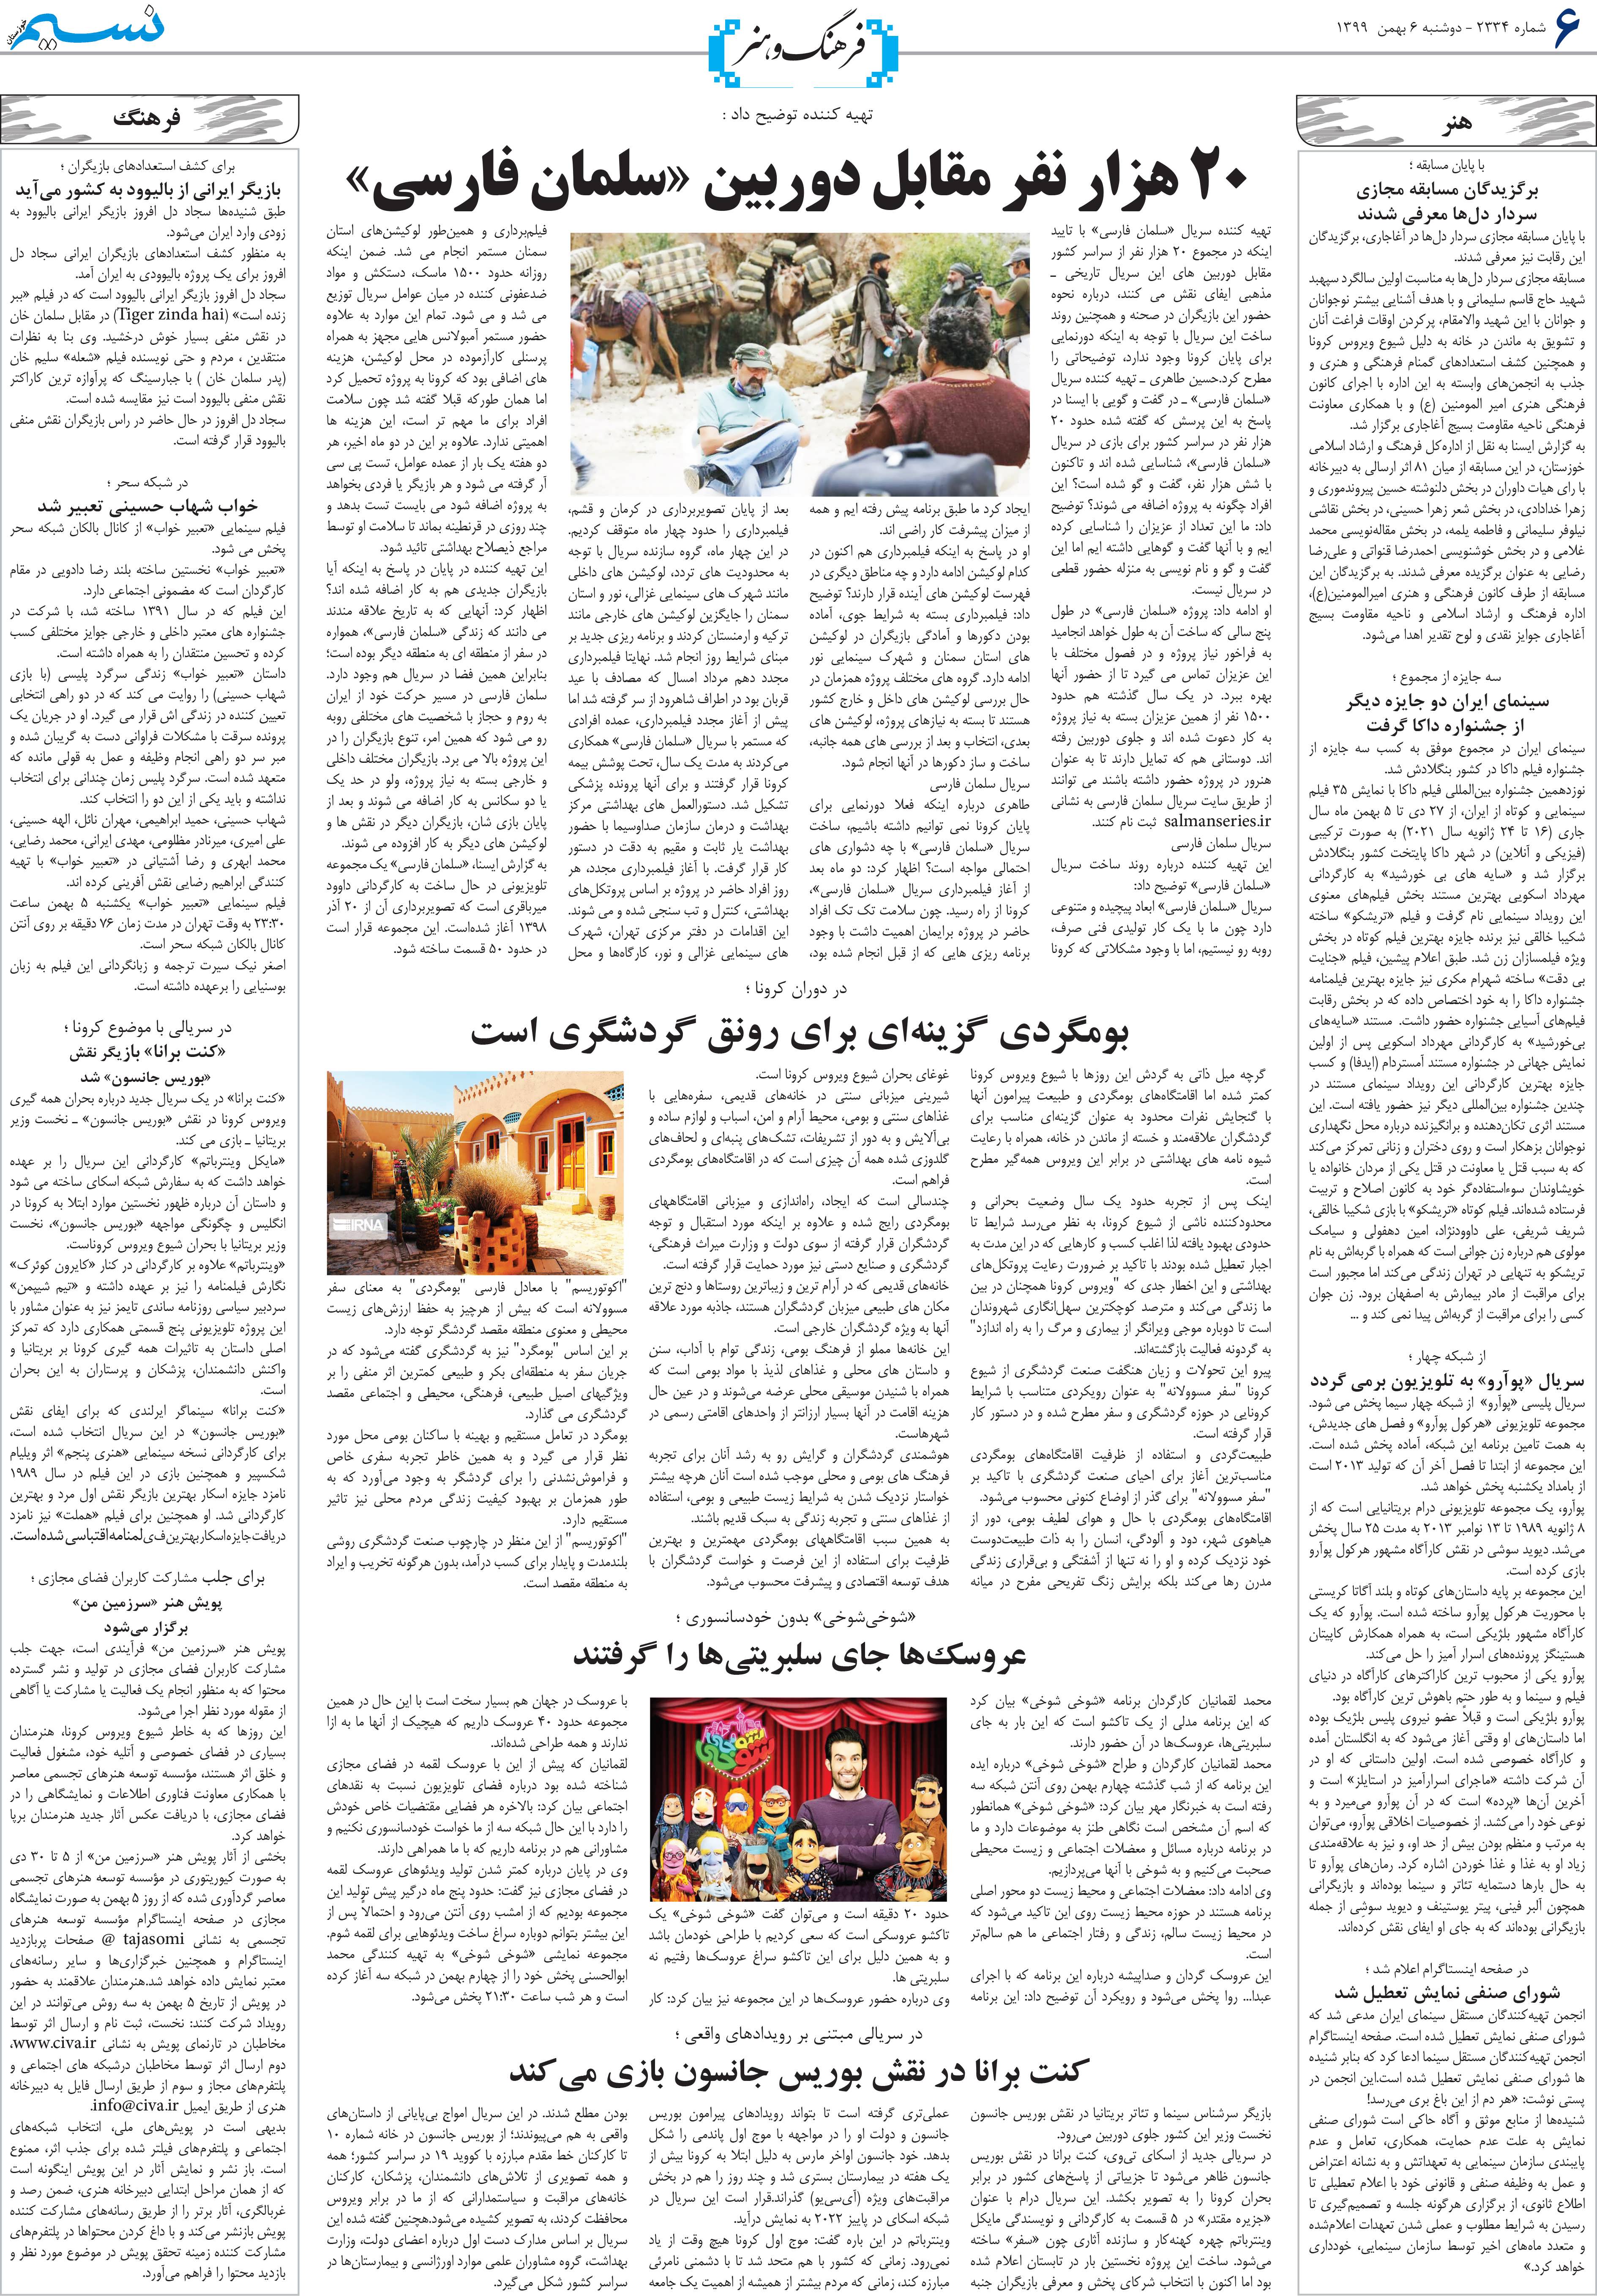 صفحه فرهنگ و هنر روزنامه نسیم شماره 2334